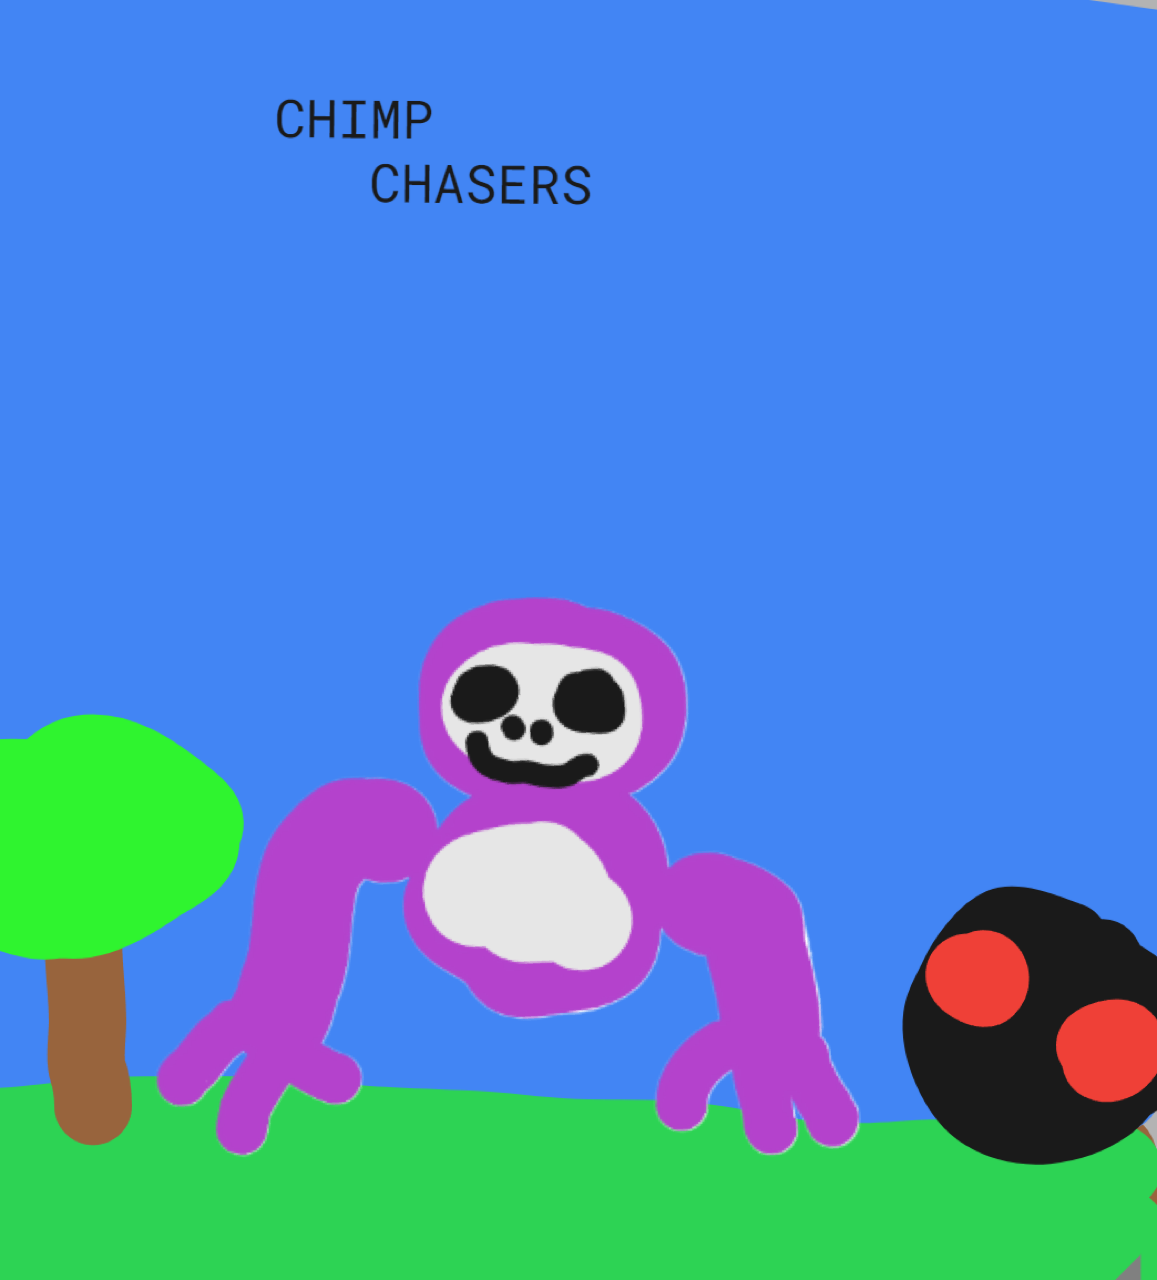 Chimp chaser's